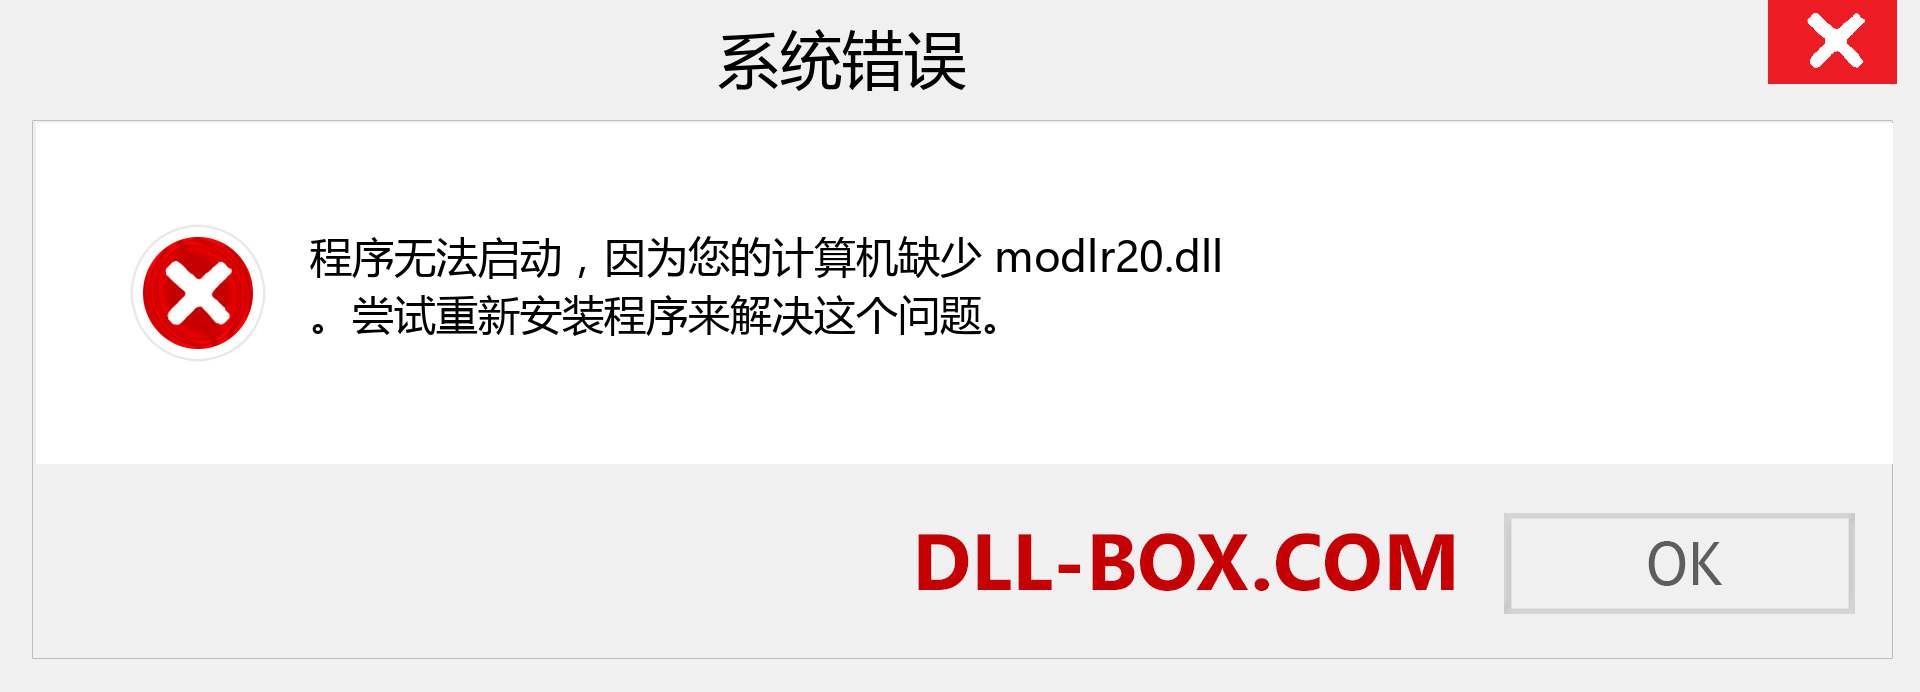 modlr20.dll 文件丢失？。 适用于 Windows 7、8、10 的下载 - 修复 Windows、照片、图像上的 modlr20 dll 丢失错误